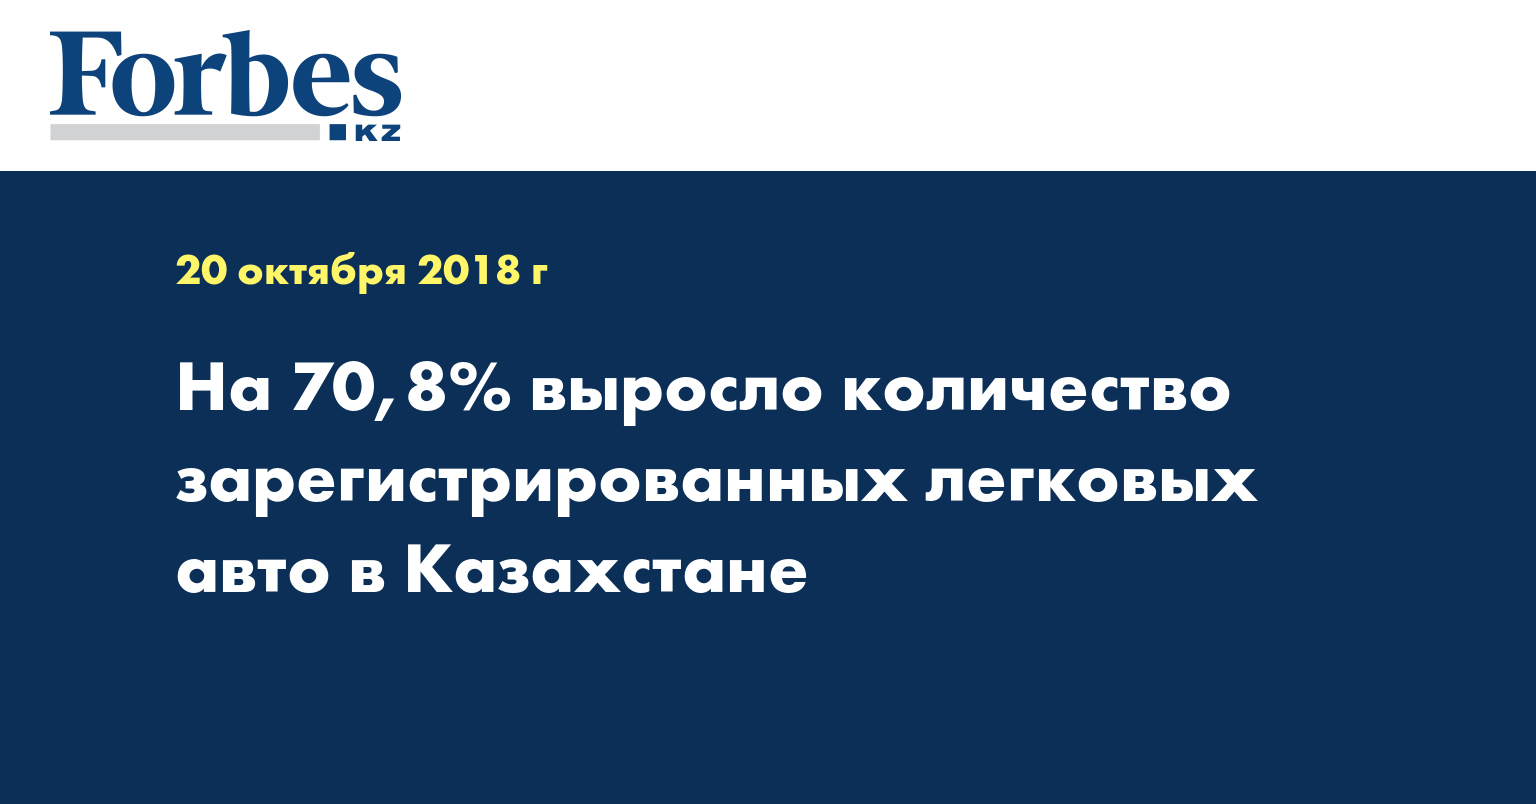 На 70,8% выросло количество зарегистрированных легковых авто в Казахстане 